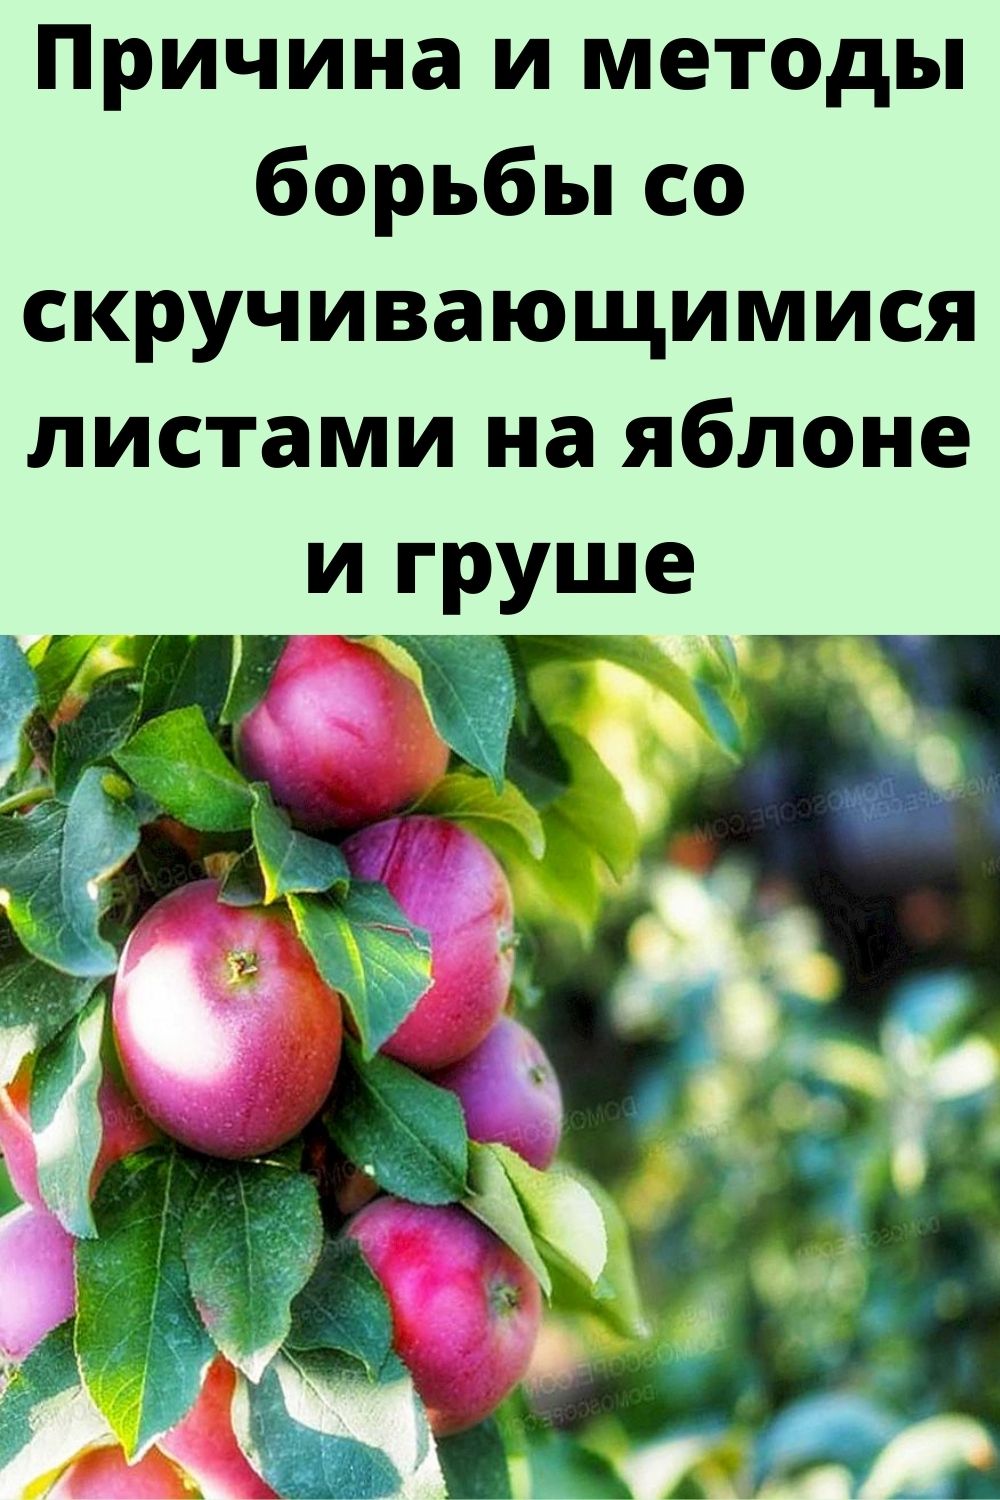 Причина и методы борьбы со скручивающимися листами на яблоне и груше